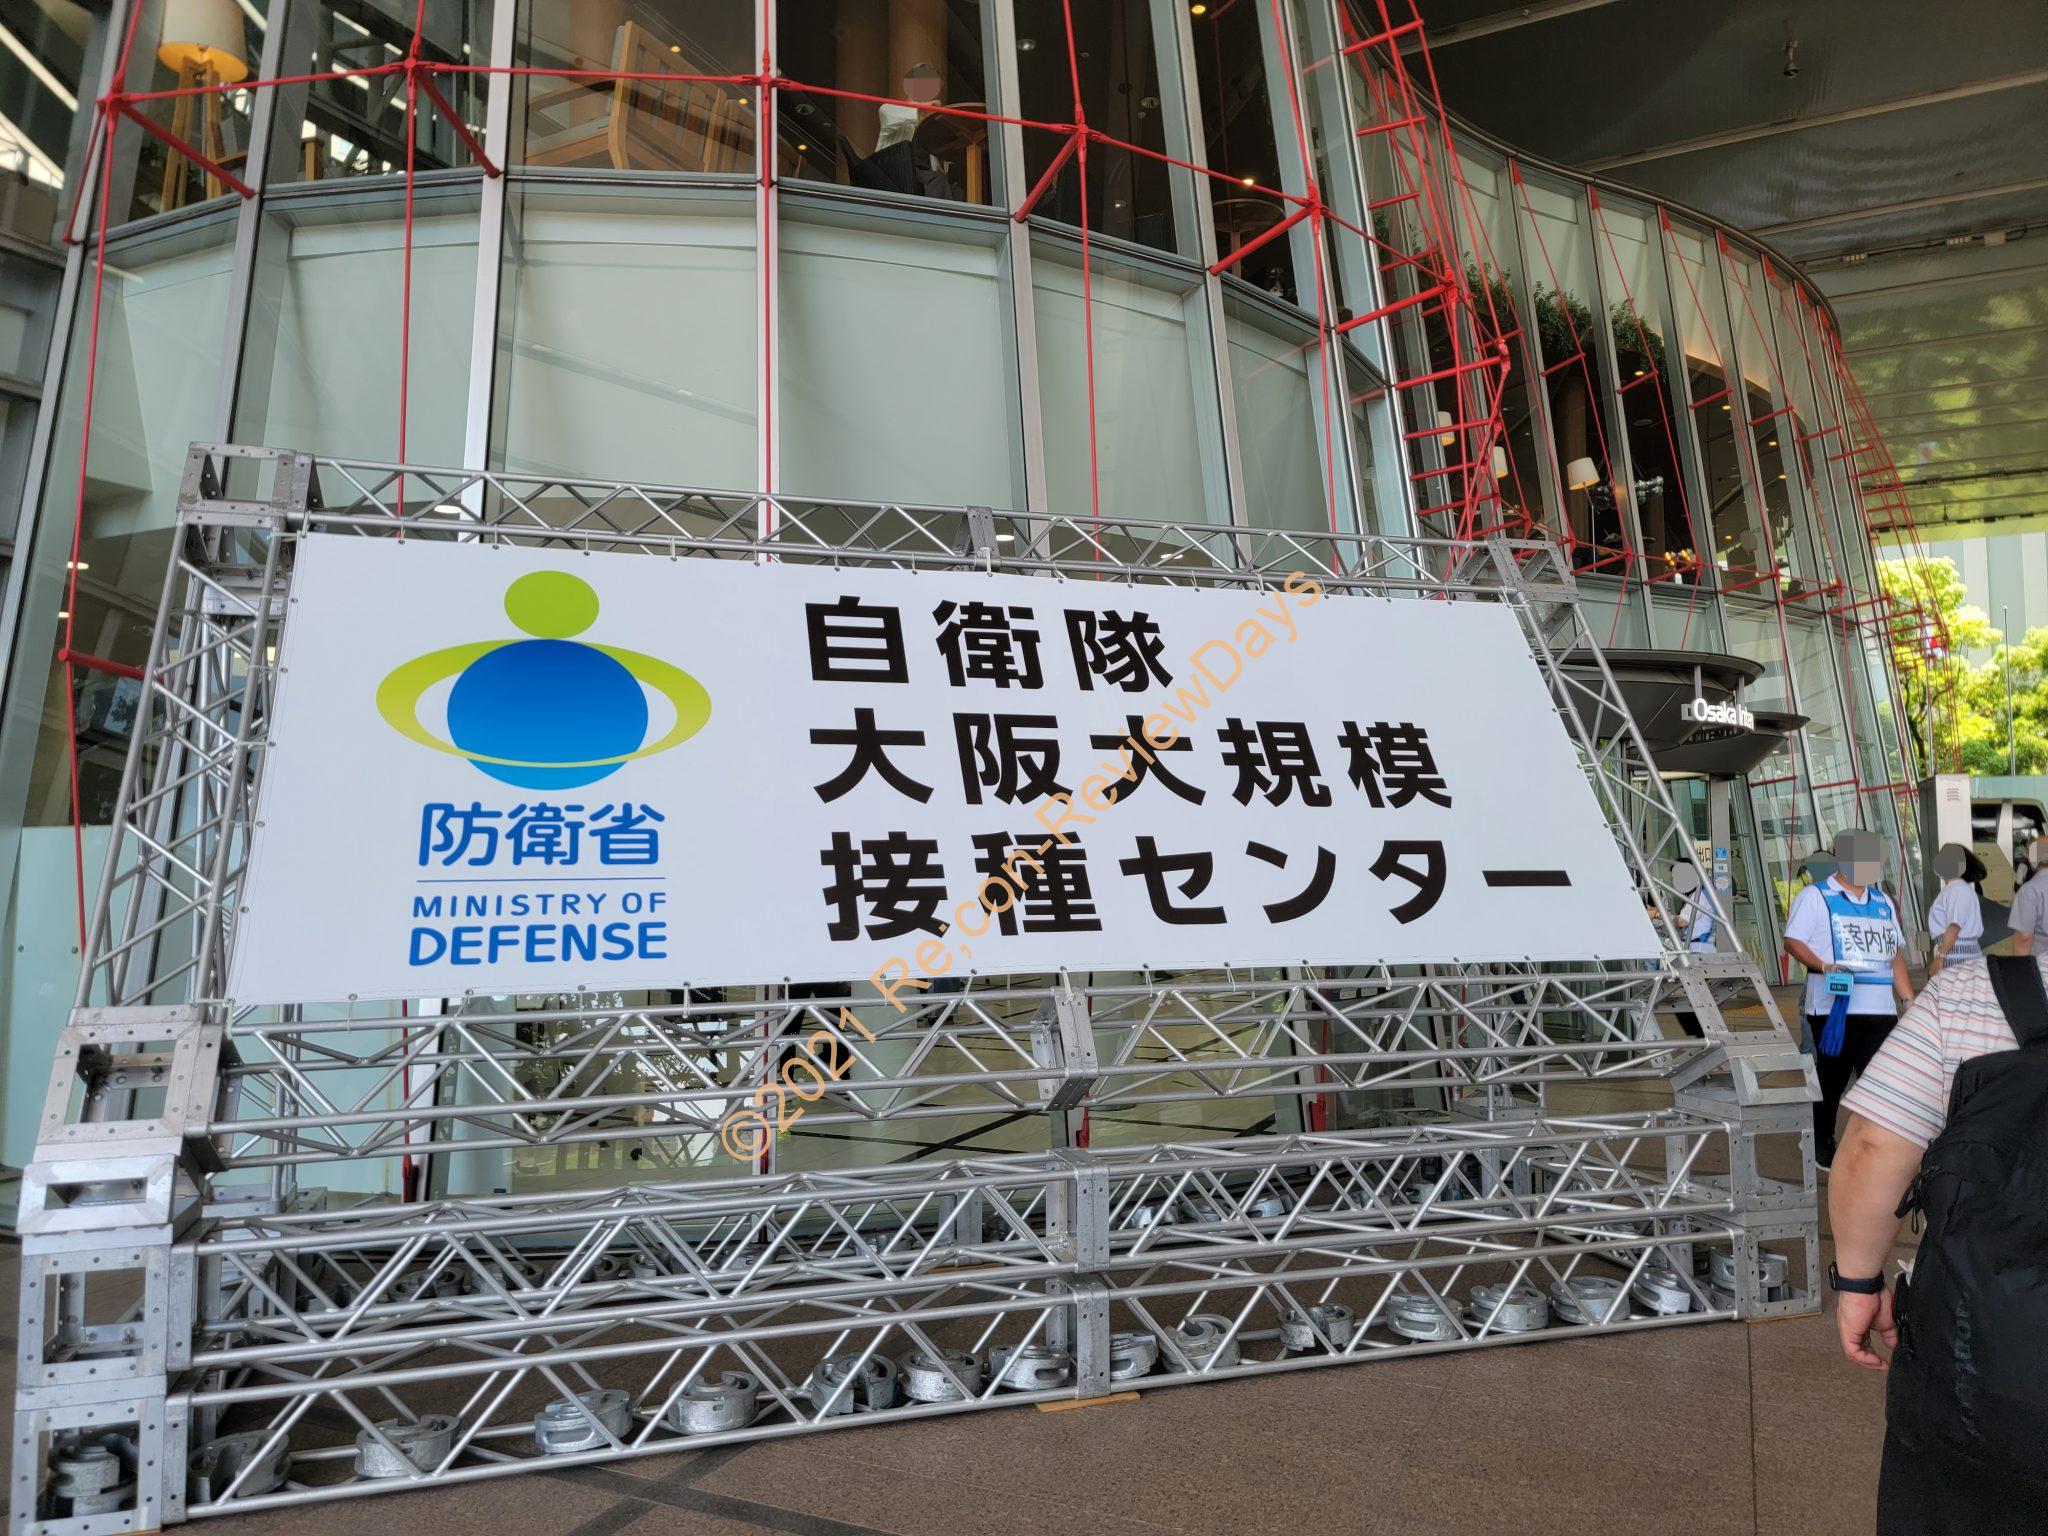 大阪で実施されている「自衛隊大阪大規模接種センター(大阪センター)」の新型コロナウイルスワクチン接種1回目を受けに行ってきました #新型コロナウイルス #ワクチン #大規模接種